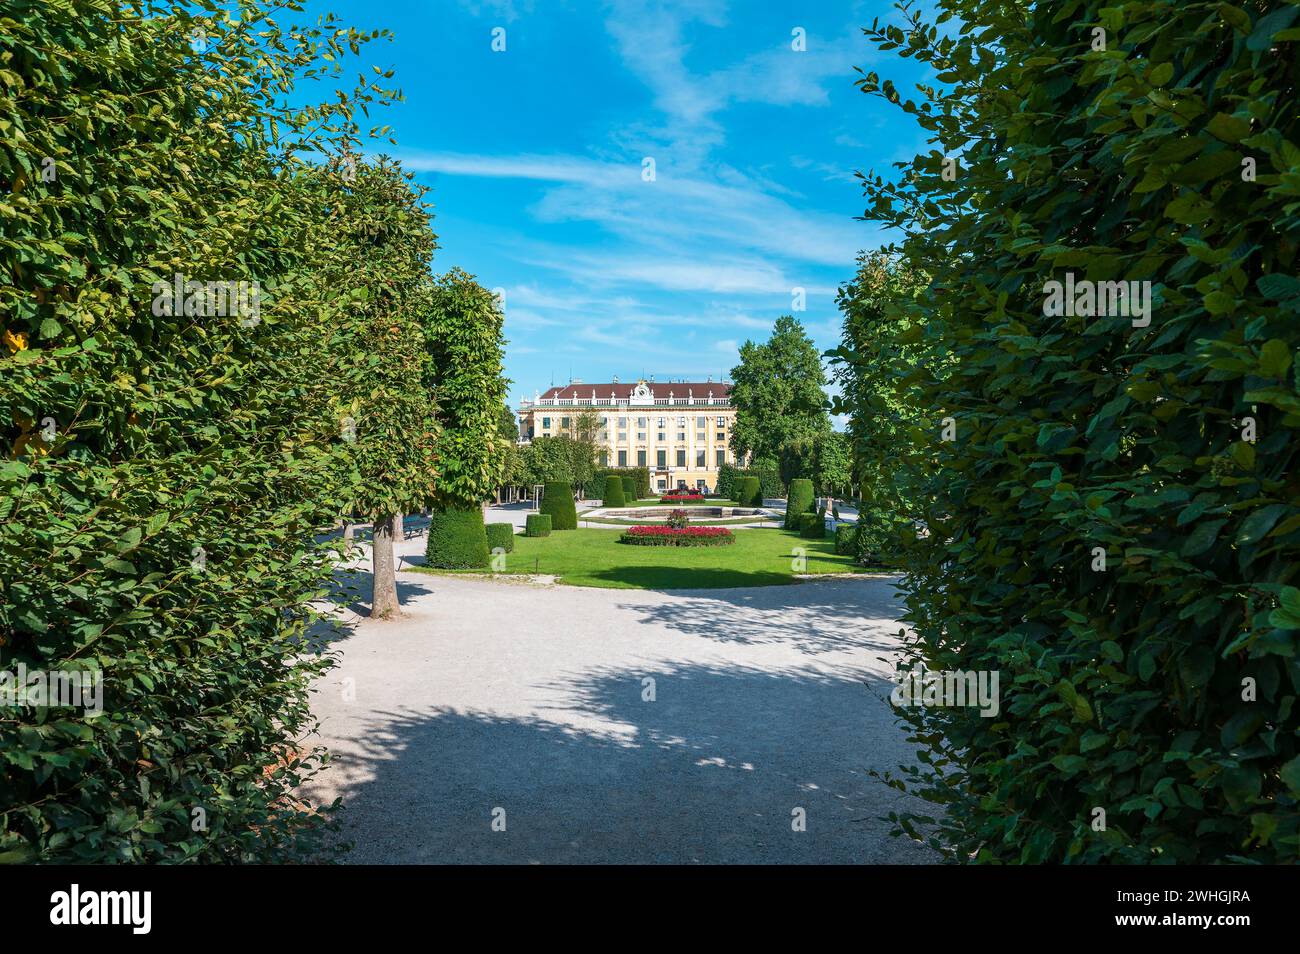 Vienna, Austria - 12 agosto 2022: Palazzo Schönbrunn, la magnifica residenza estiva dei sovrani asburgici a Vienna. Ammira la sua sontuosa architettura Foto Stock